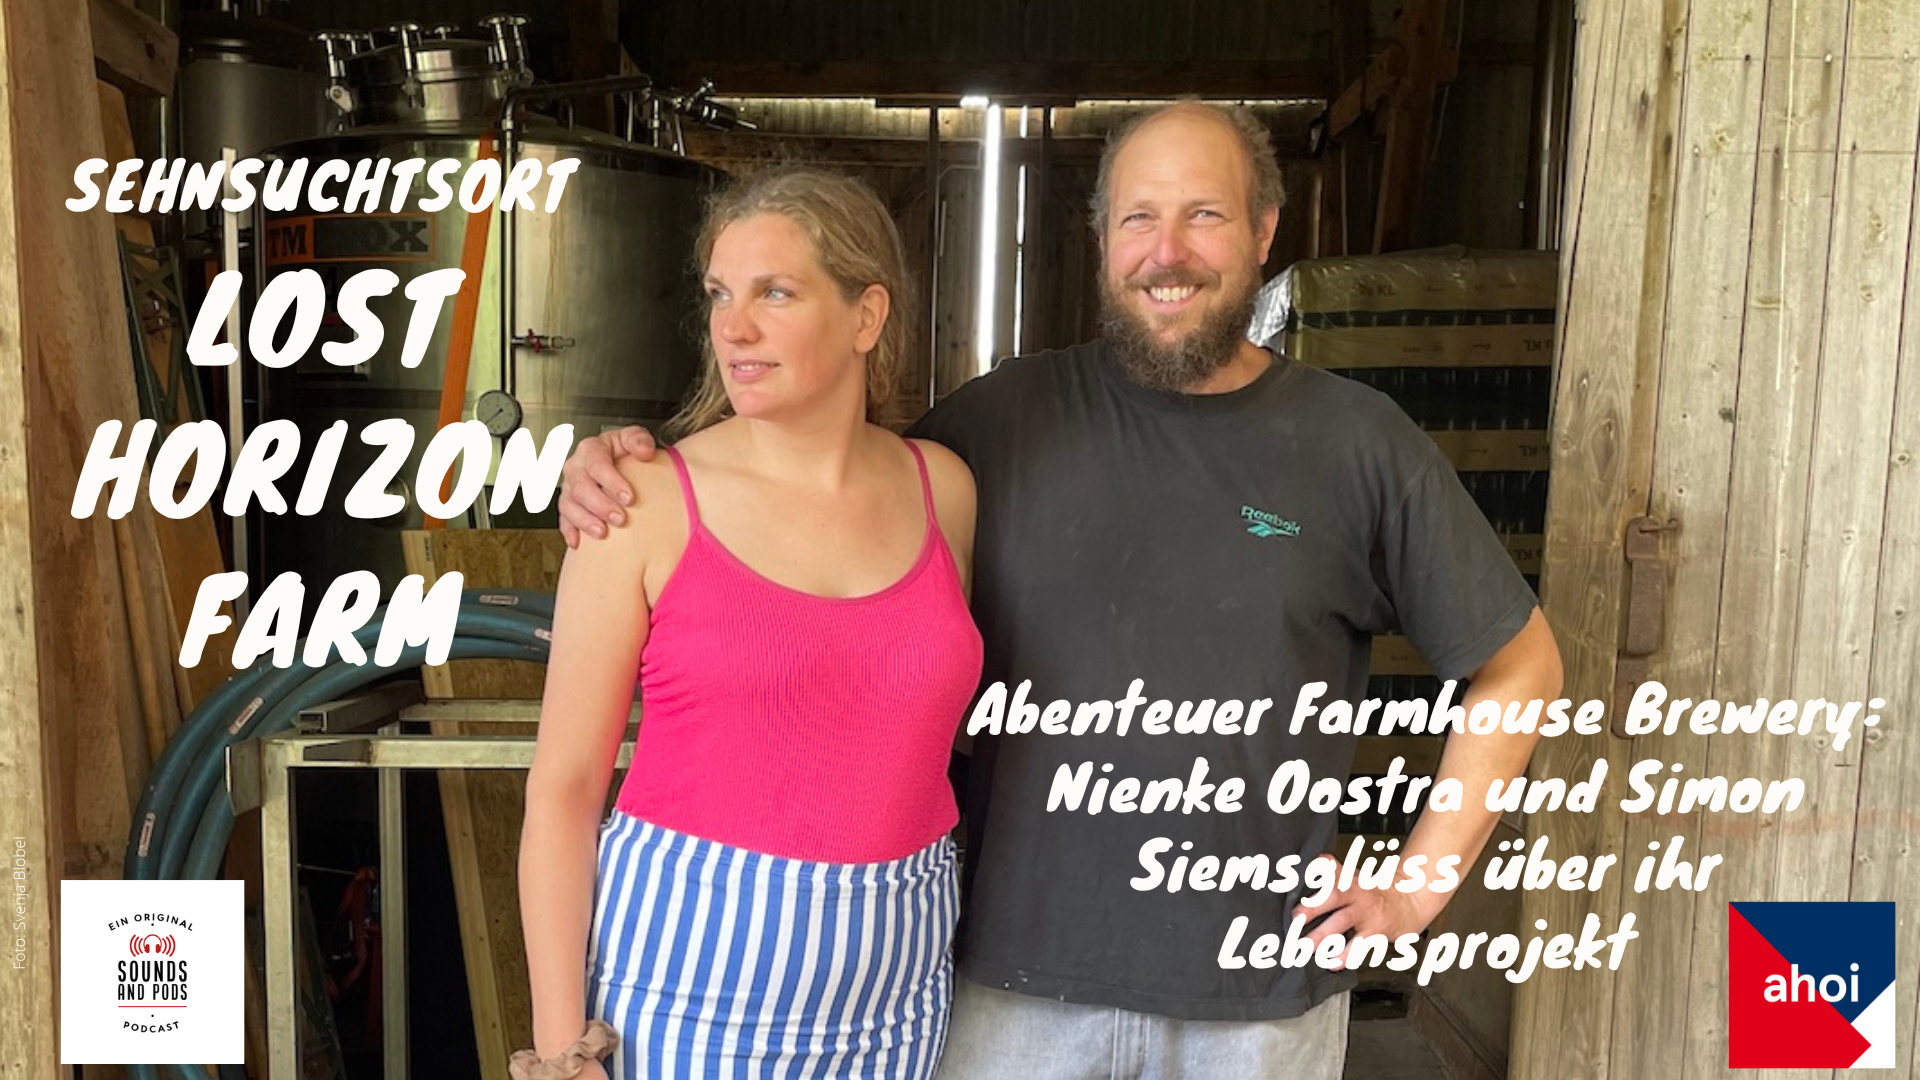 Lost Horizon Farm-Erbauer Nienke Oostra und Simon Siemsglüss sprechen über ihre Farmhouse Brewery